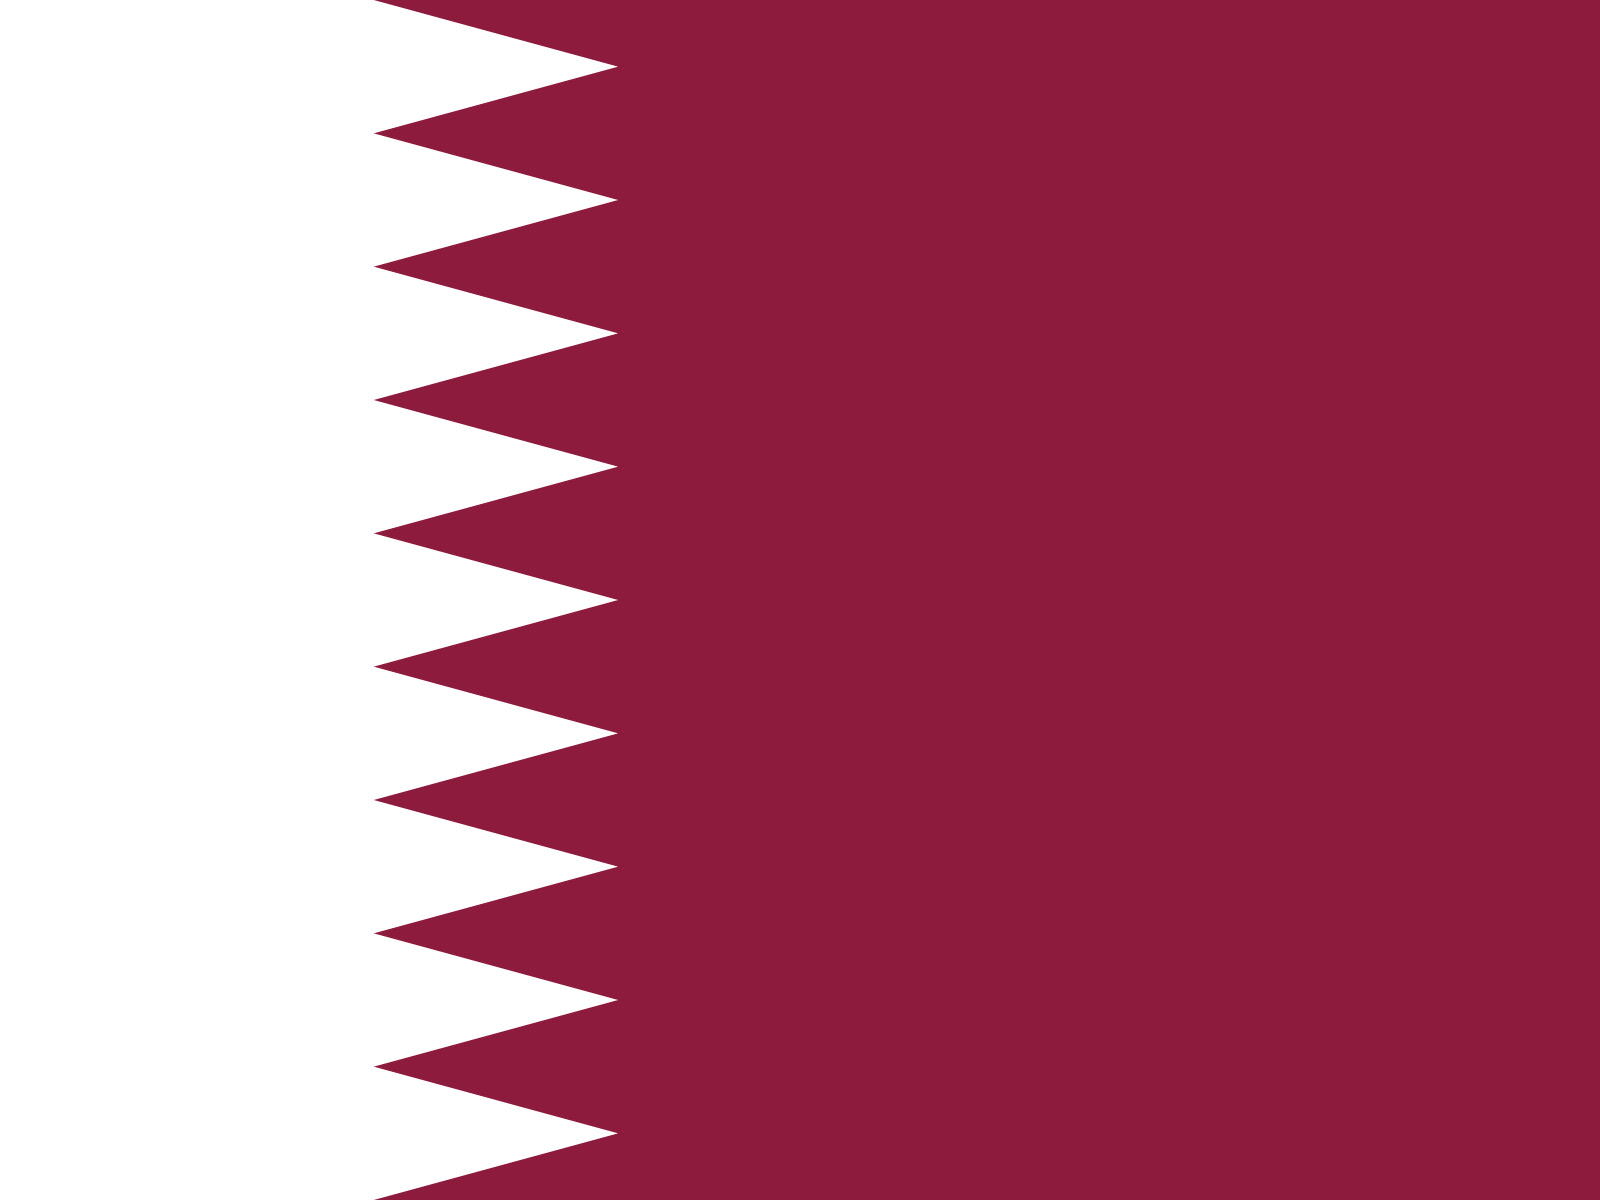 Logo Katar